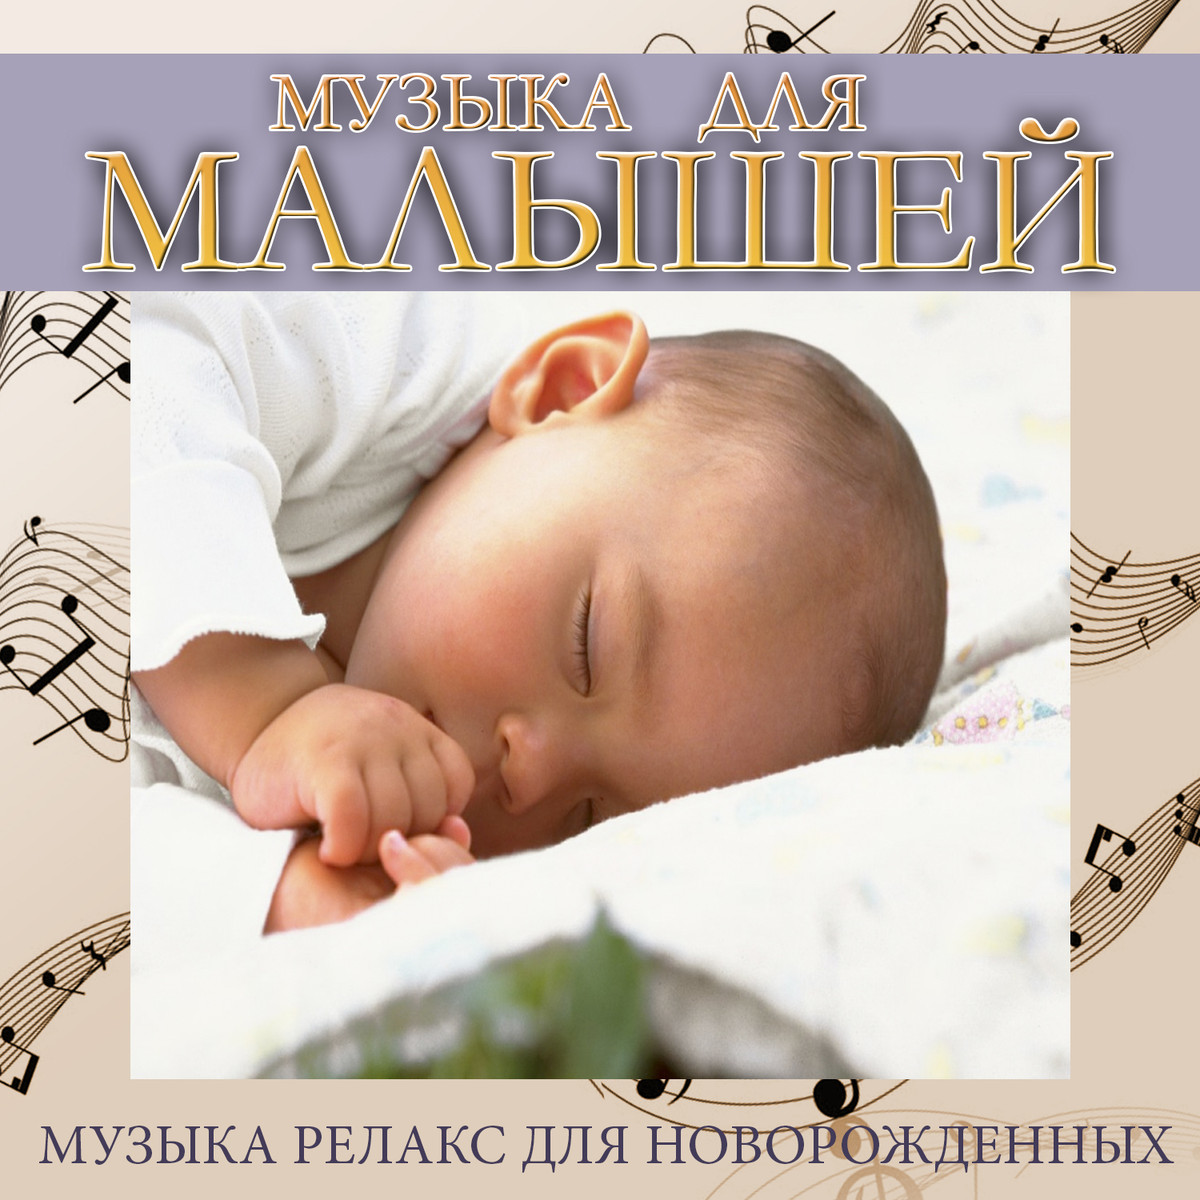 Слушать релаксационную музыку. Мелодии для новорожденных. Релакс для малышей для сна. Музыка для релаксации для детей. Мелодии для новорожденных успокаивающие.